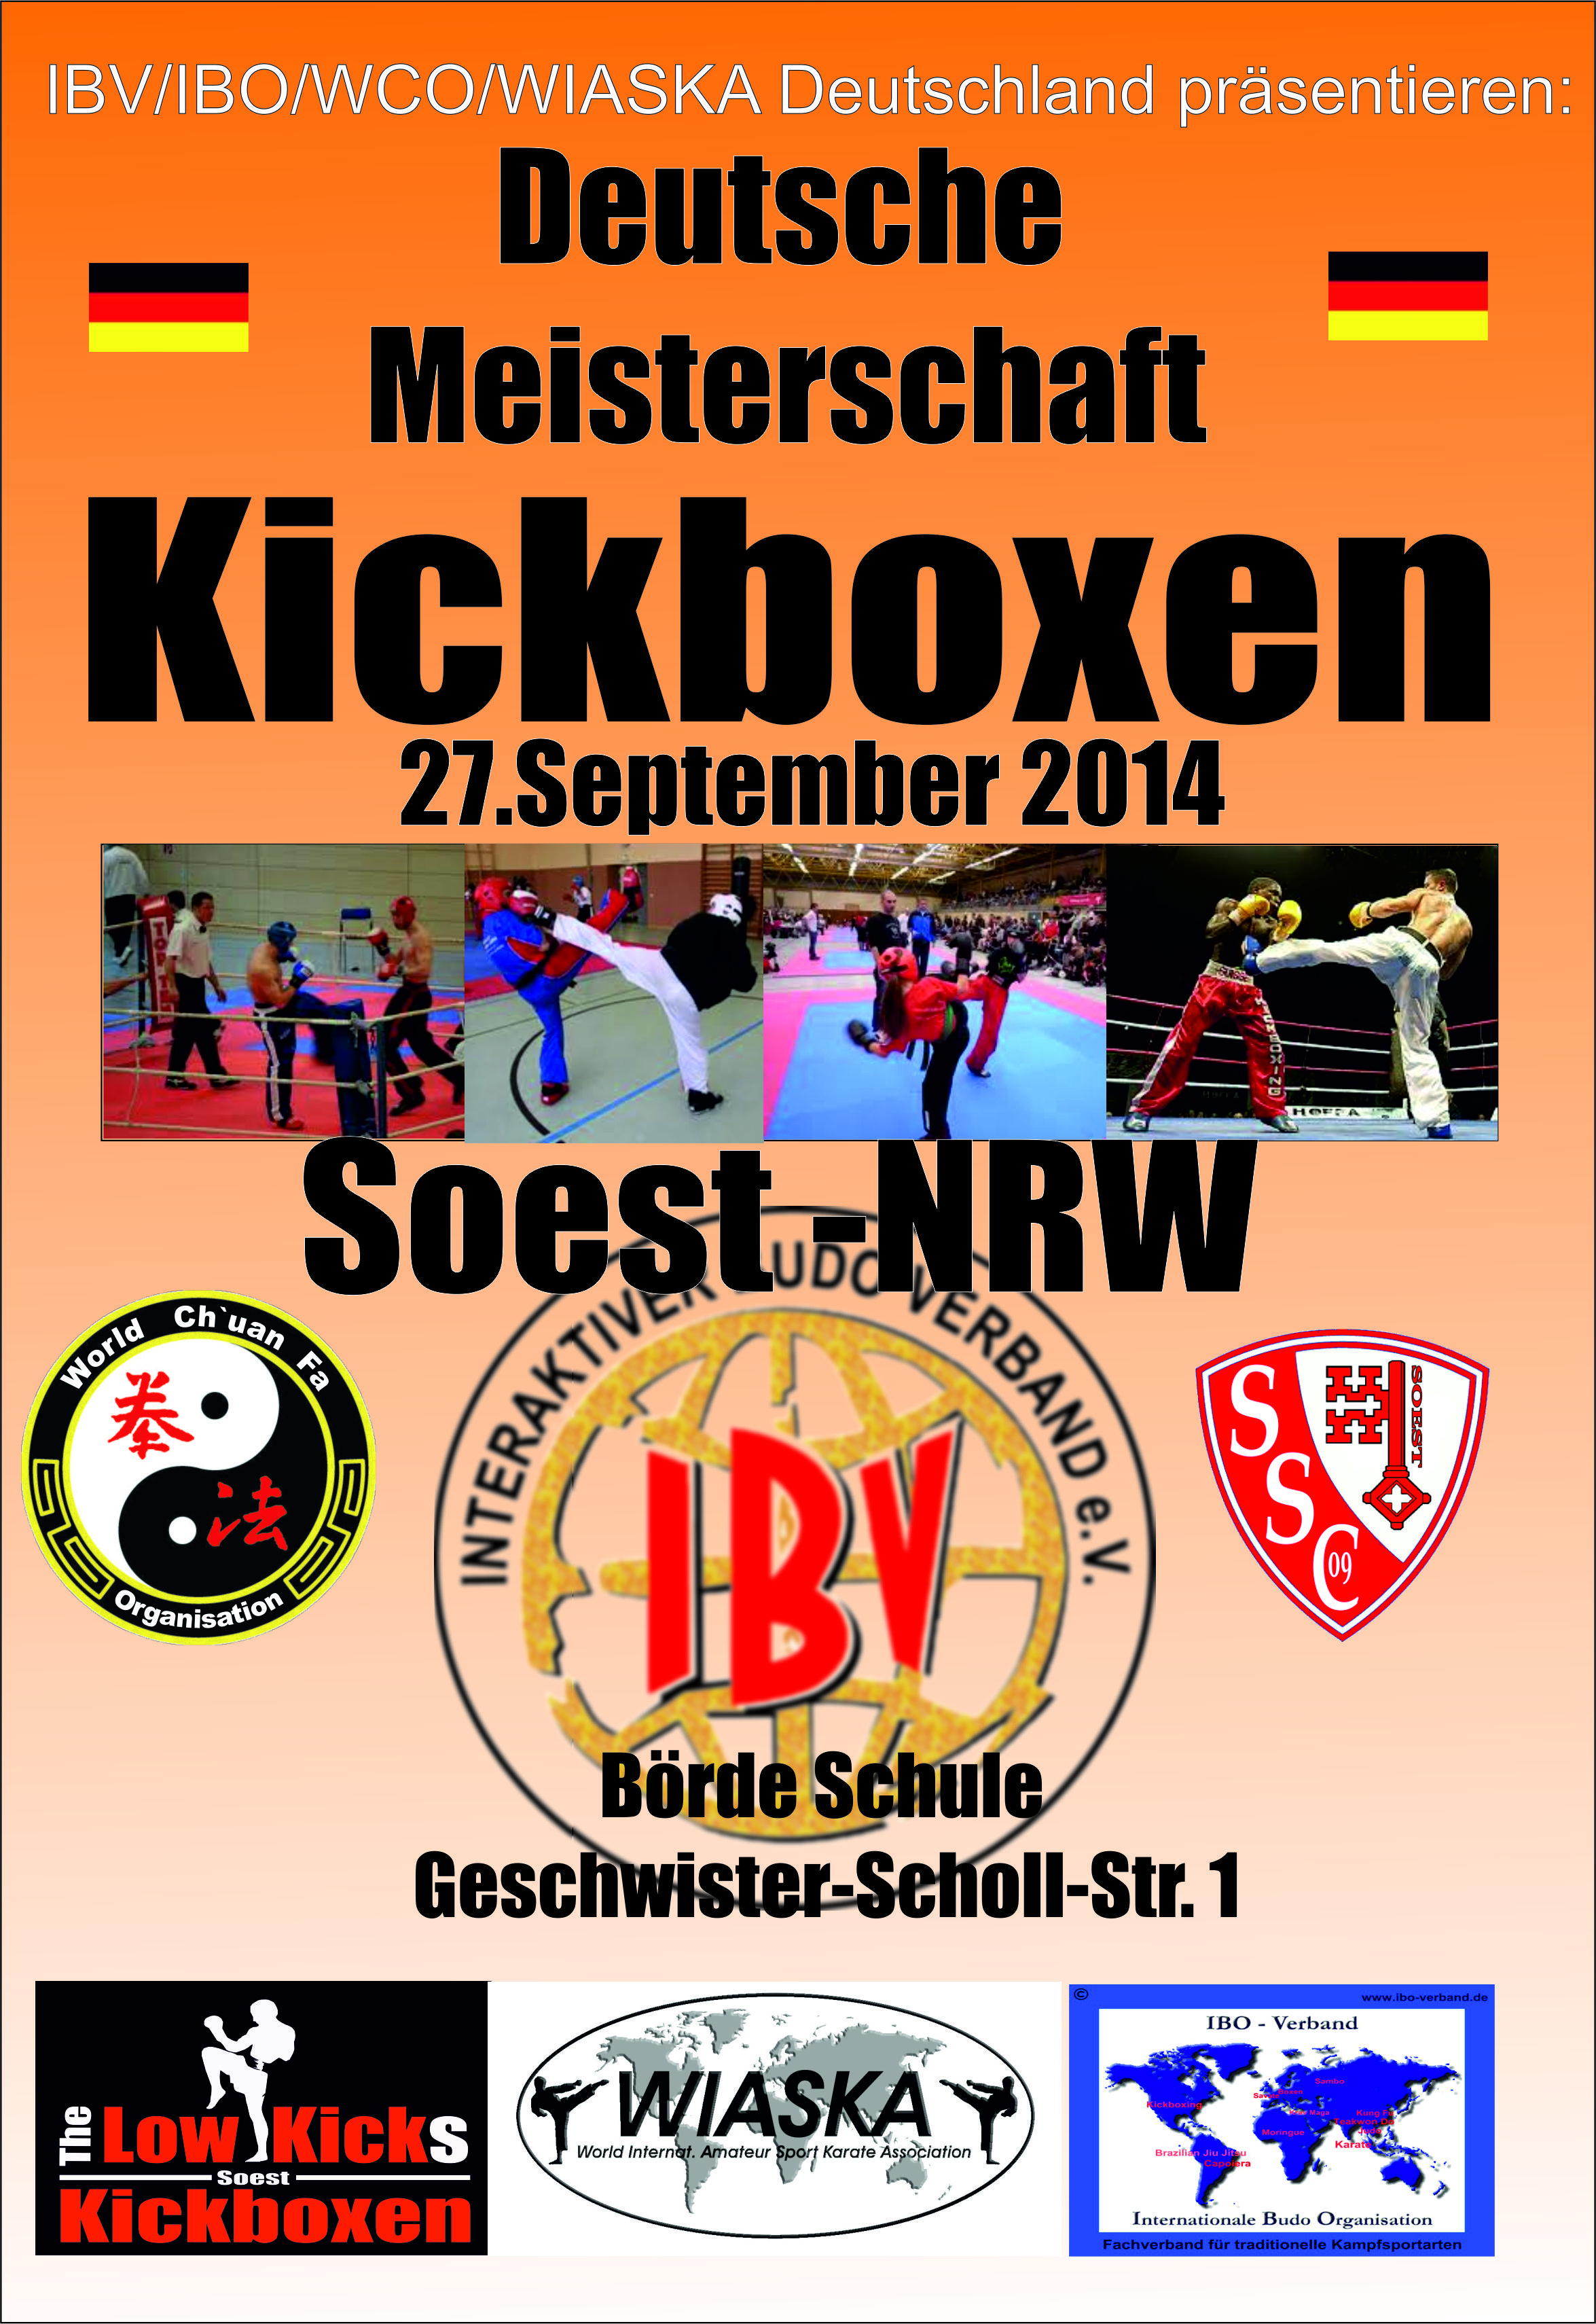 IBVIBOWCOWIASKA Deutschland präsentieren die Deutsche Meisterschaft im Kickboxen 2014